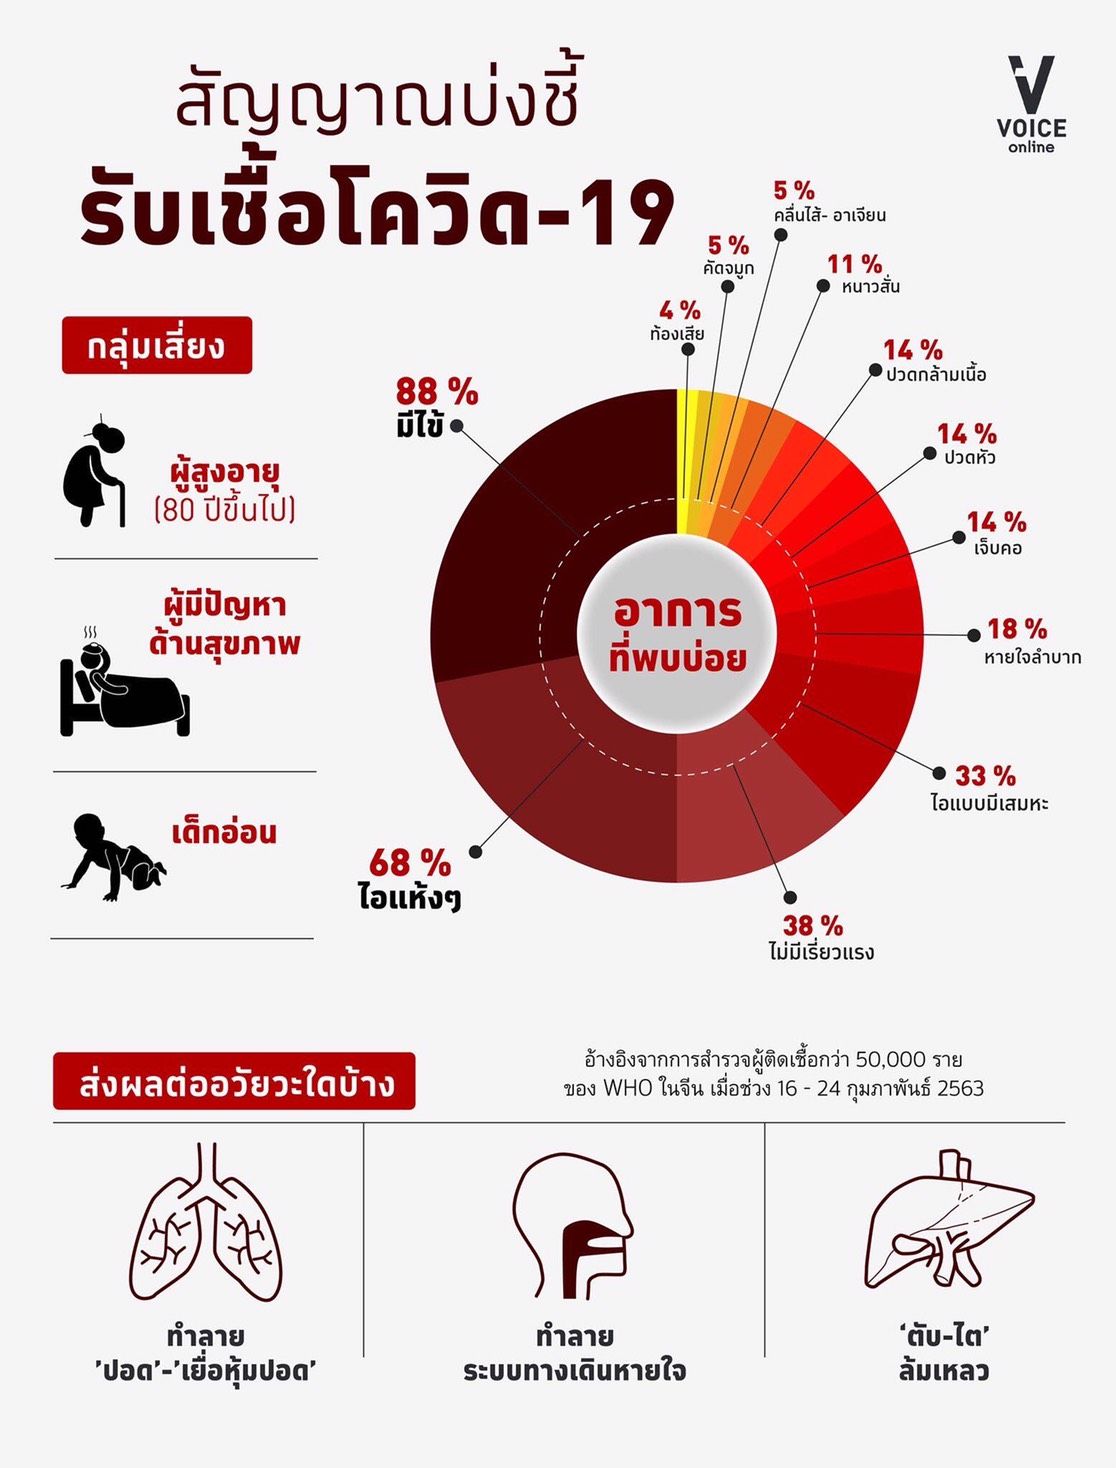 infographic-กราฟิกอาการโรคโควิด-19 โรคติดเชื้อไวรัสโคโรนาสายพันธุ์ใหม่ 2019